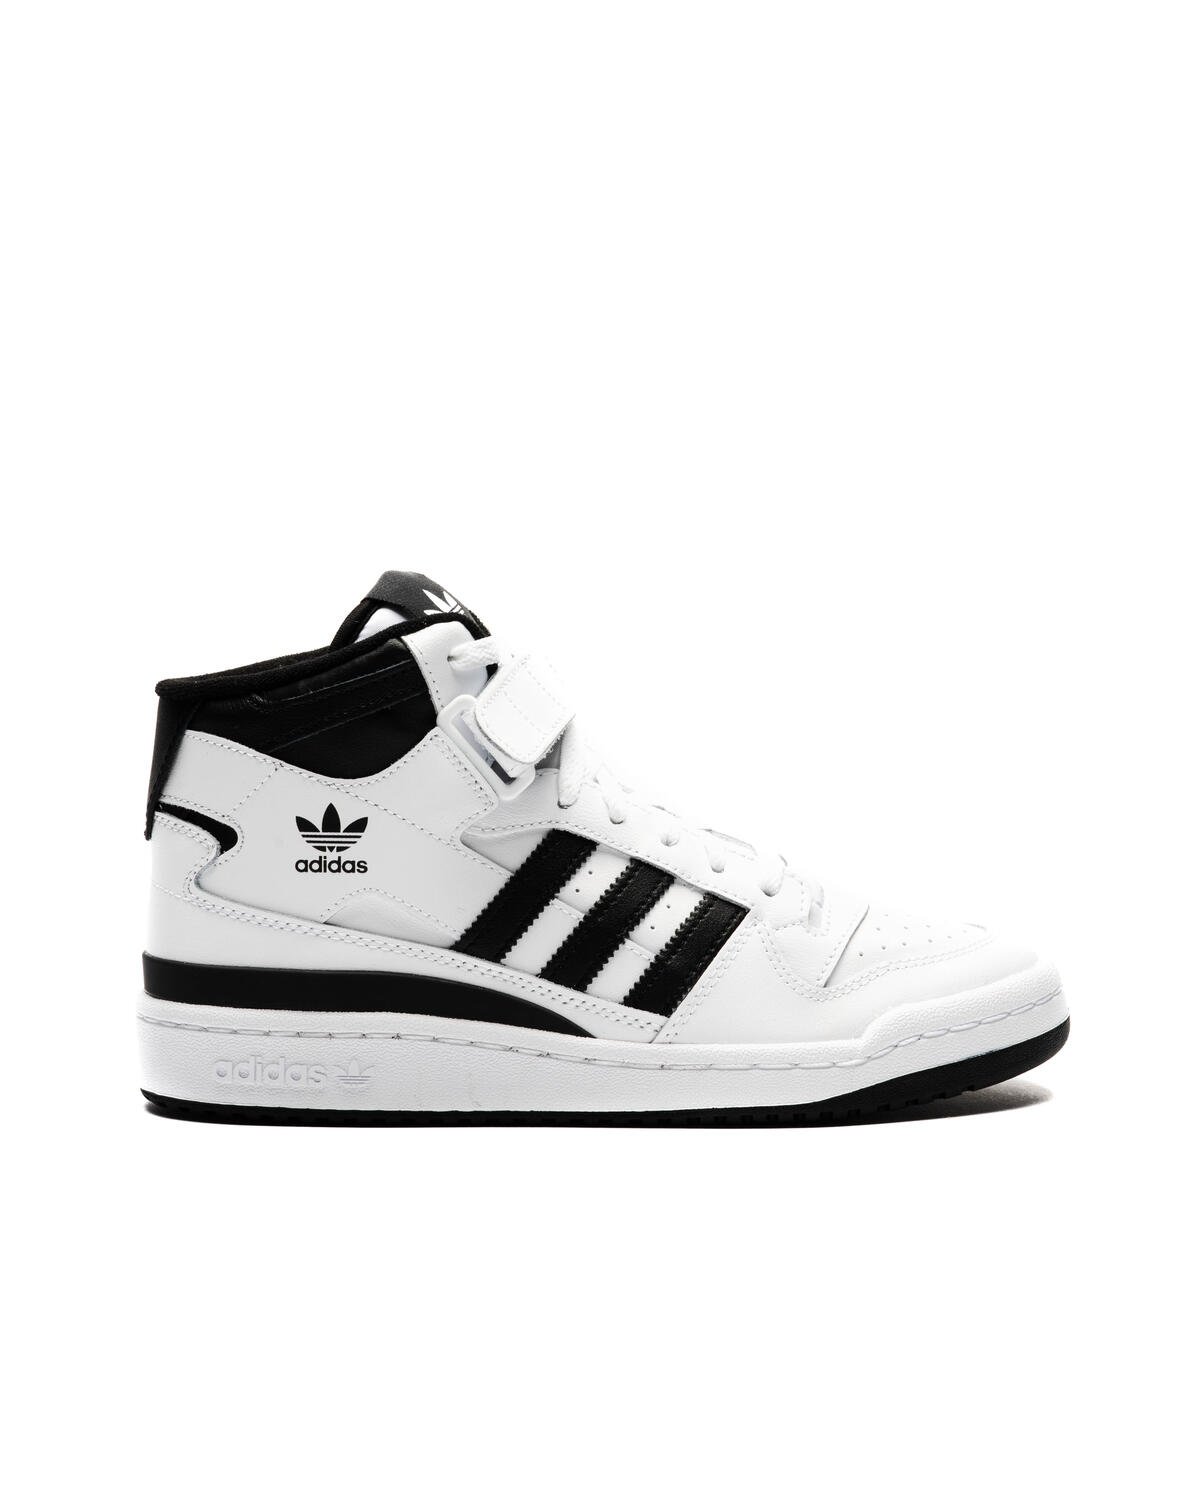 Men's shoes adidas Forum Mid Ftw White/ Core Black/ Ftw White